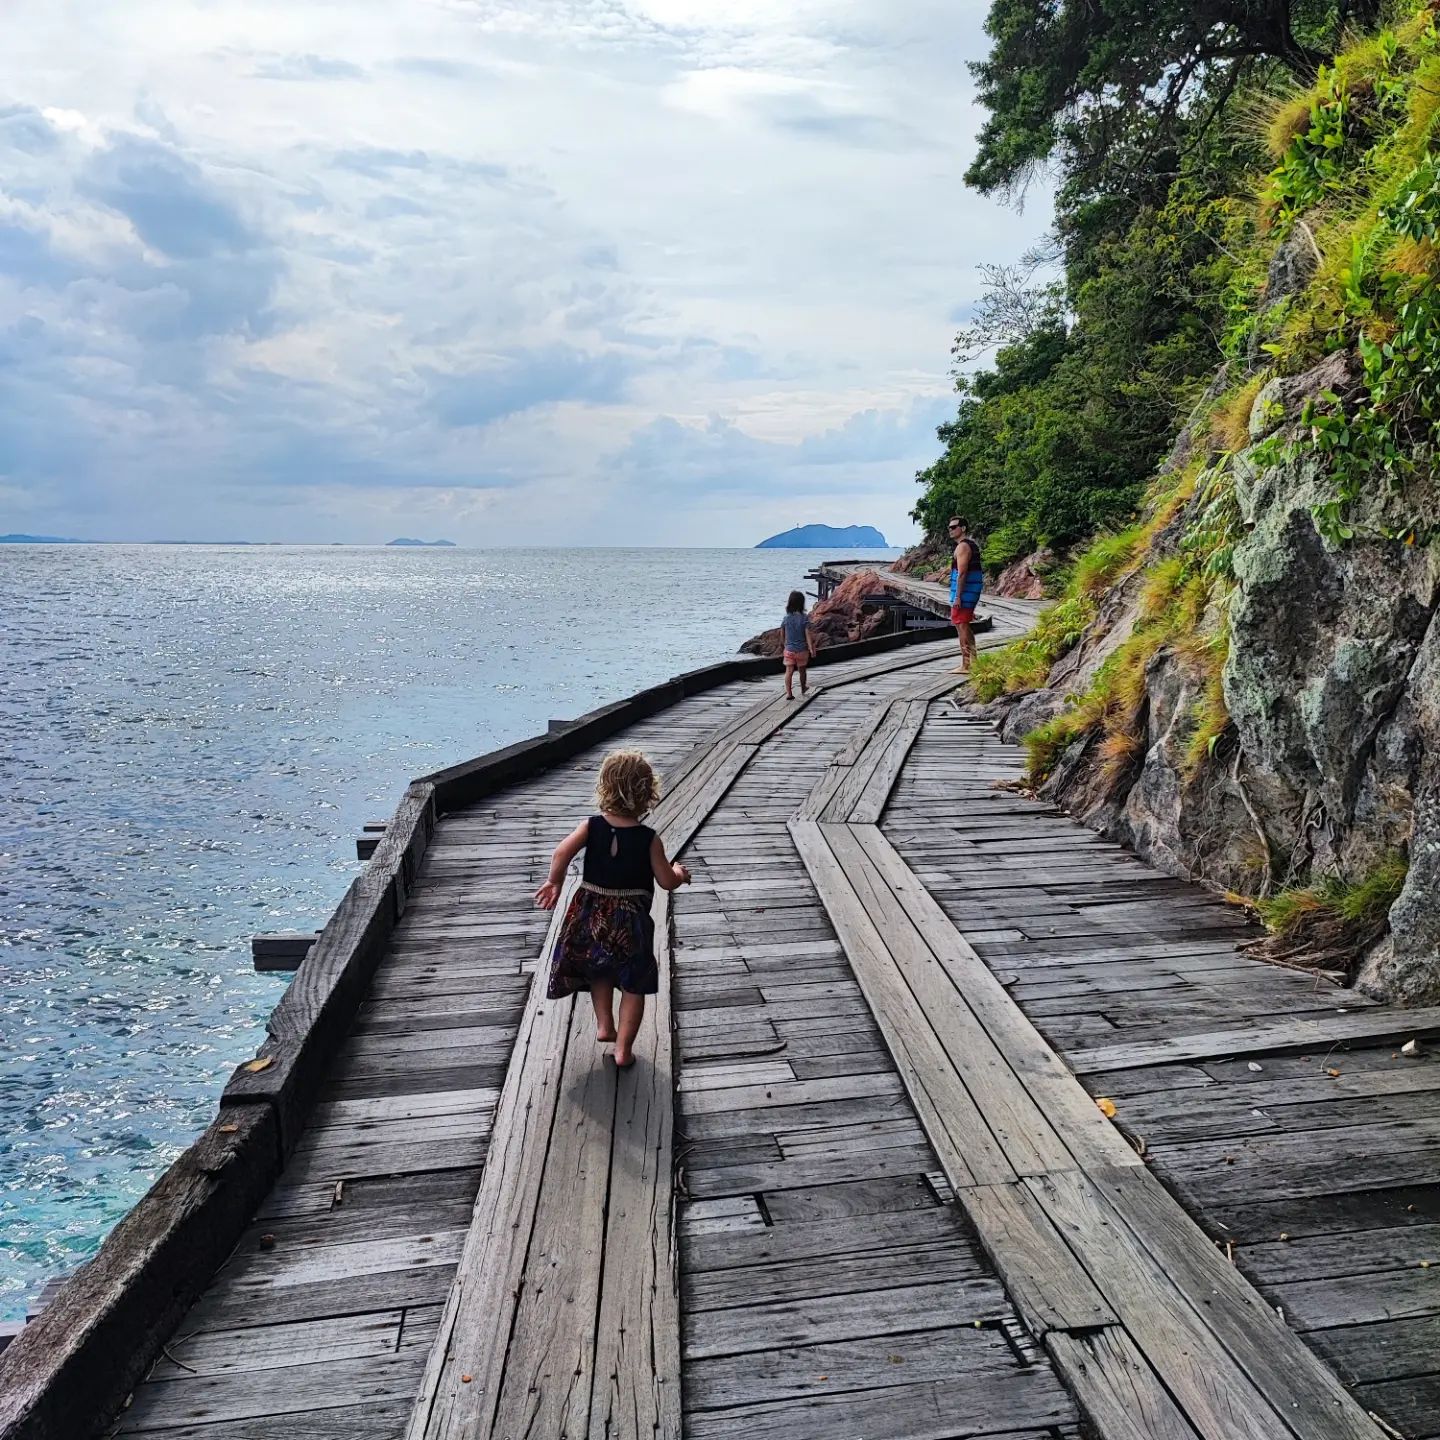 Rawa Island Without Flights -Trail for hiking and jungle walking around Rawa Island